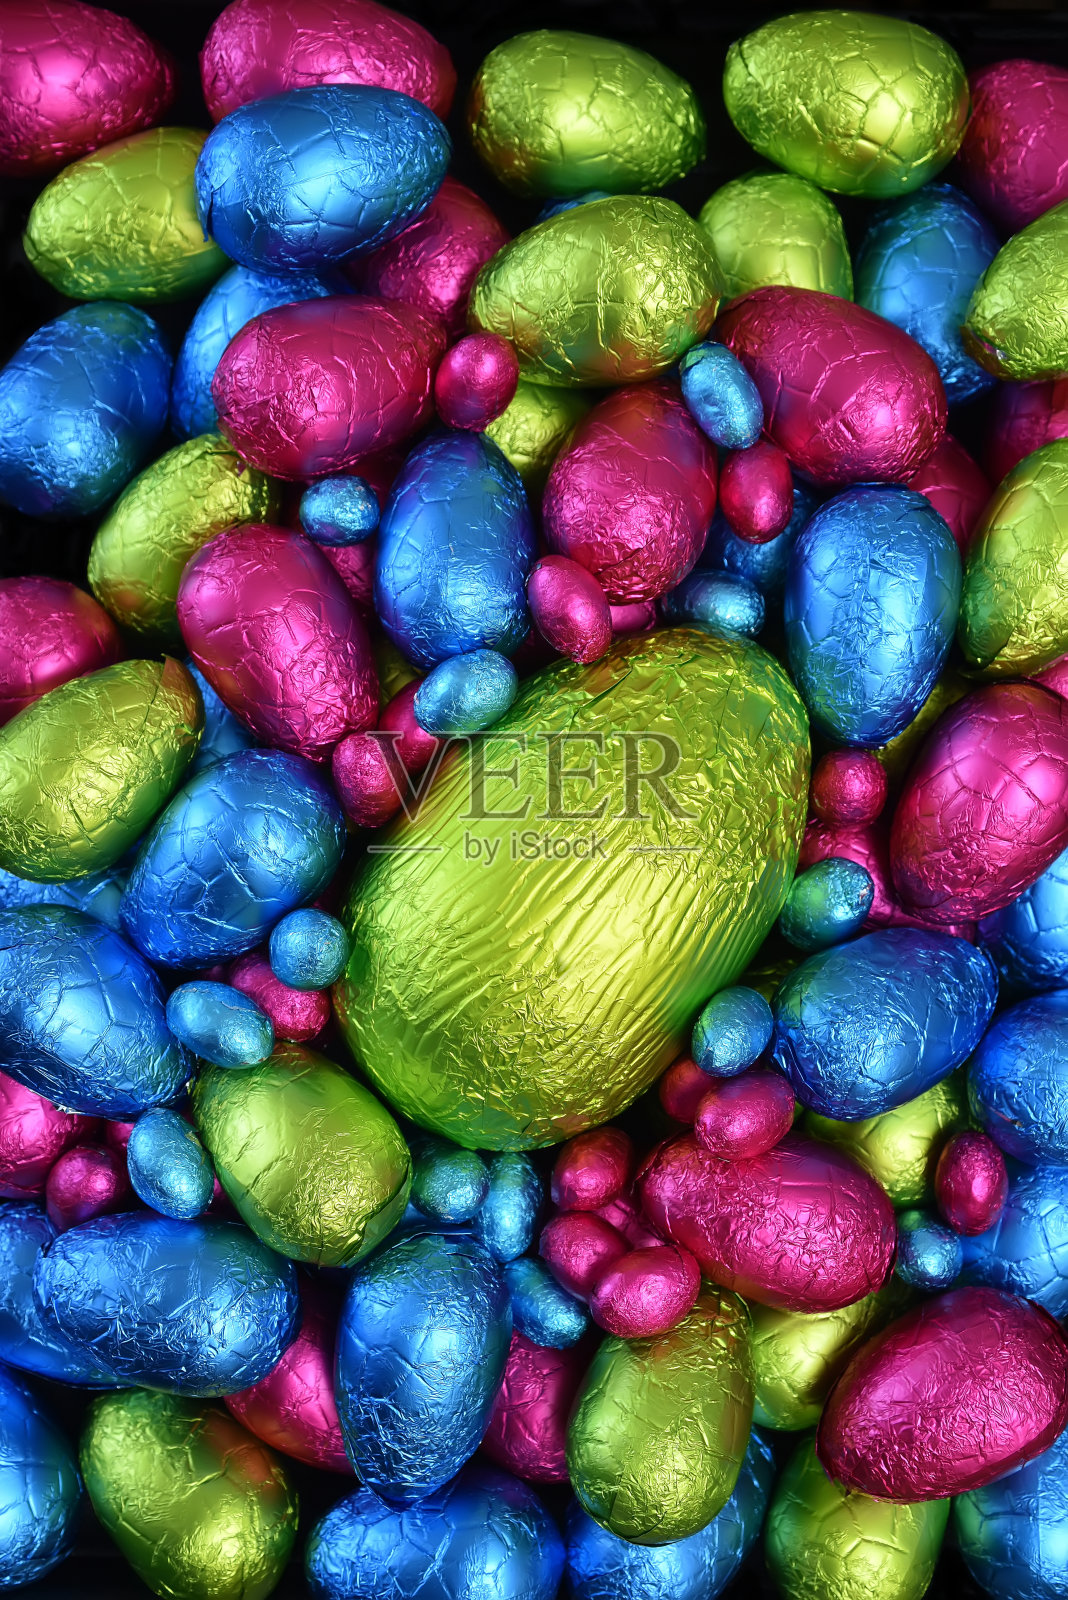 1 .用锡箔纸包裹一堆或一组颜色各异、大小各异的巧克力复活节彩蛋，彩蛋的颜色有粉色、蓝色、黄色和酸橙绿，中间放一个绿色的大鸡蛋。照片摄影图片